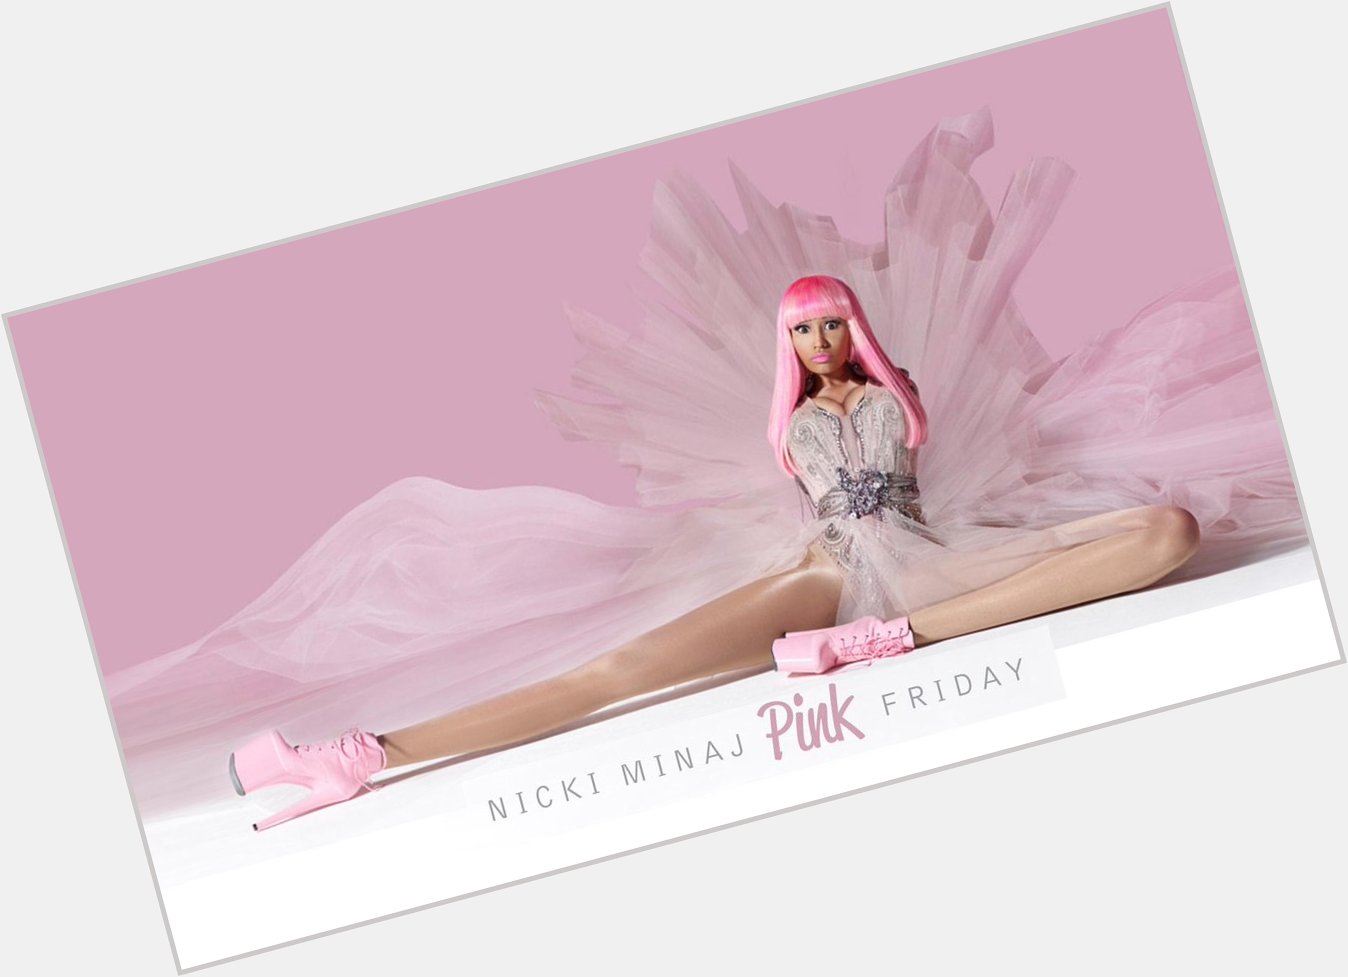 Happy birthday pink friday!  Nicki Minaj 